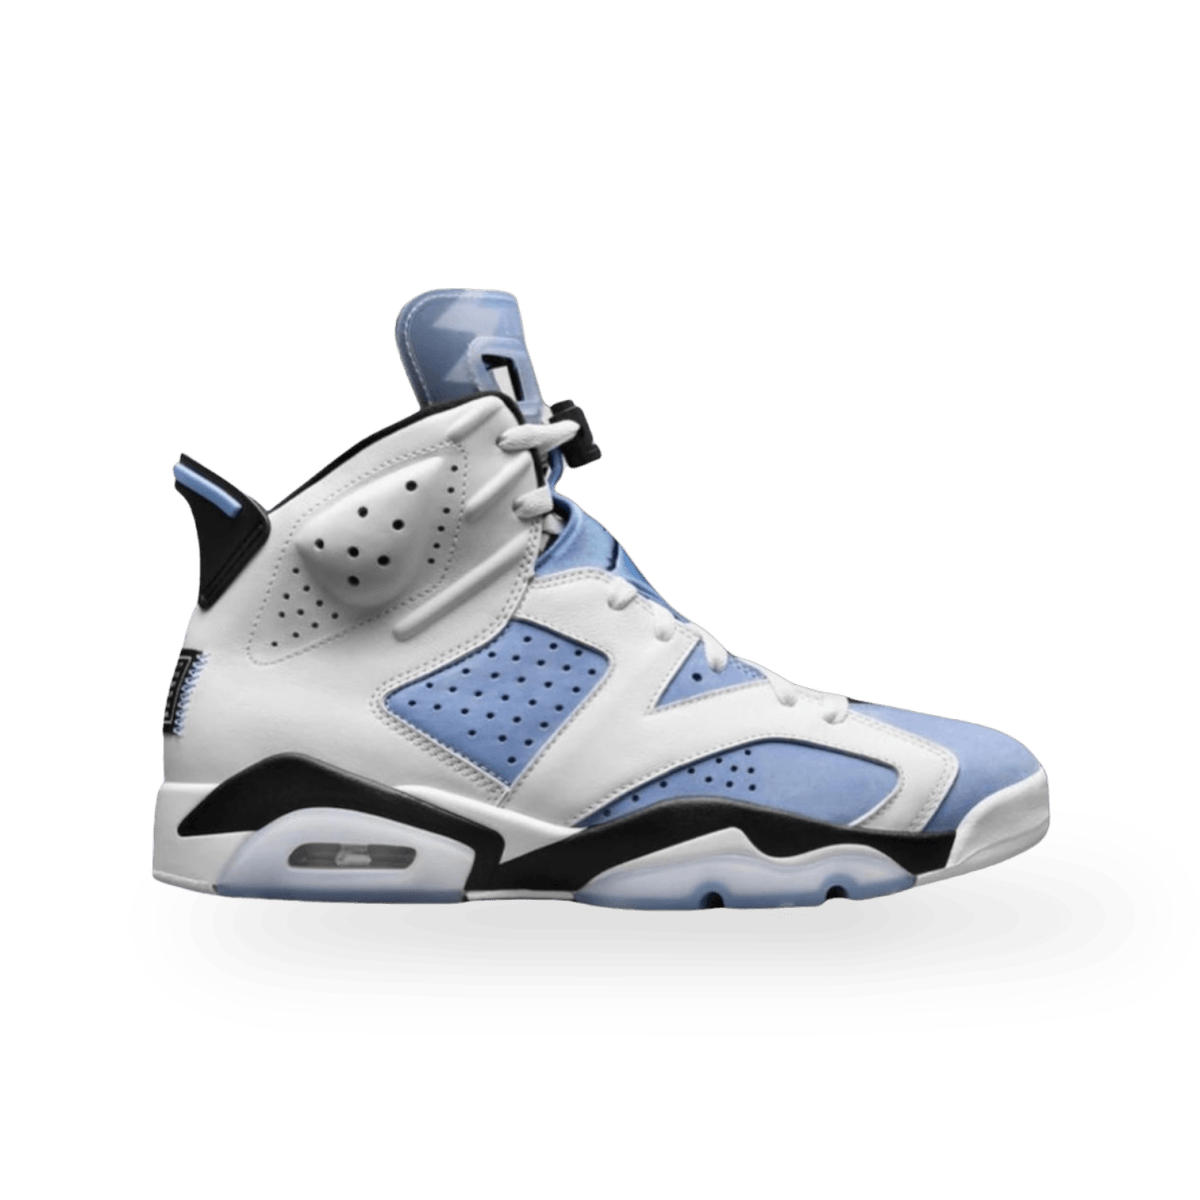 Jordan 6 Retro UNC White - High Sneaker - Jawns on Fire Sneakers & Streetwear